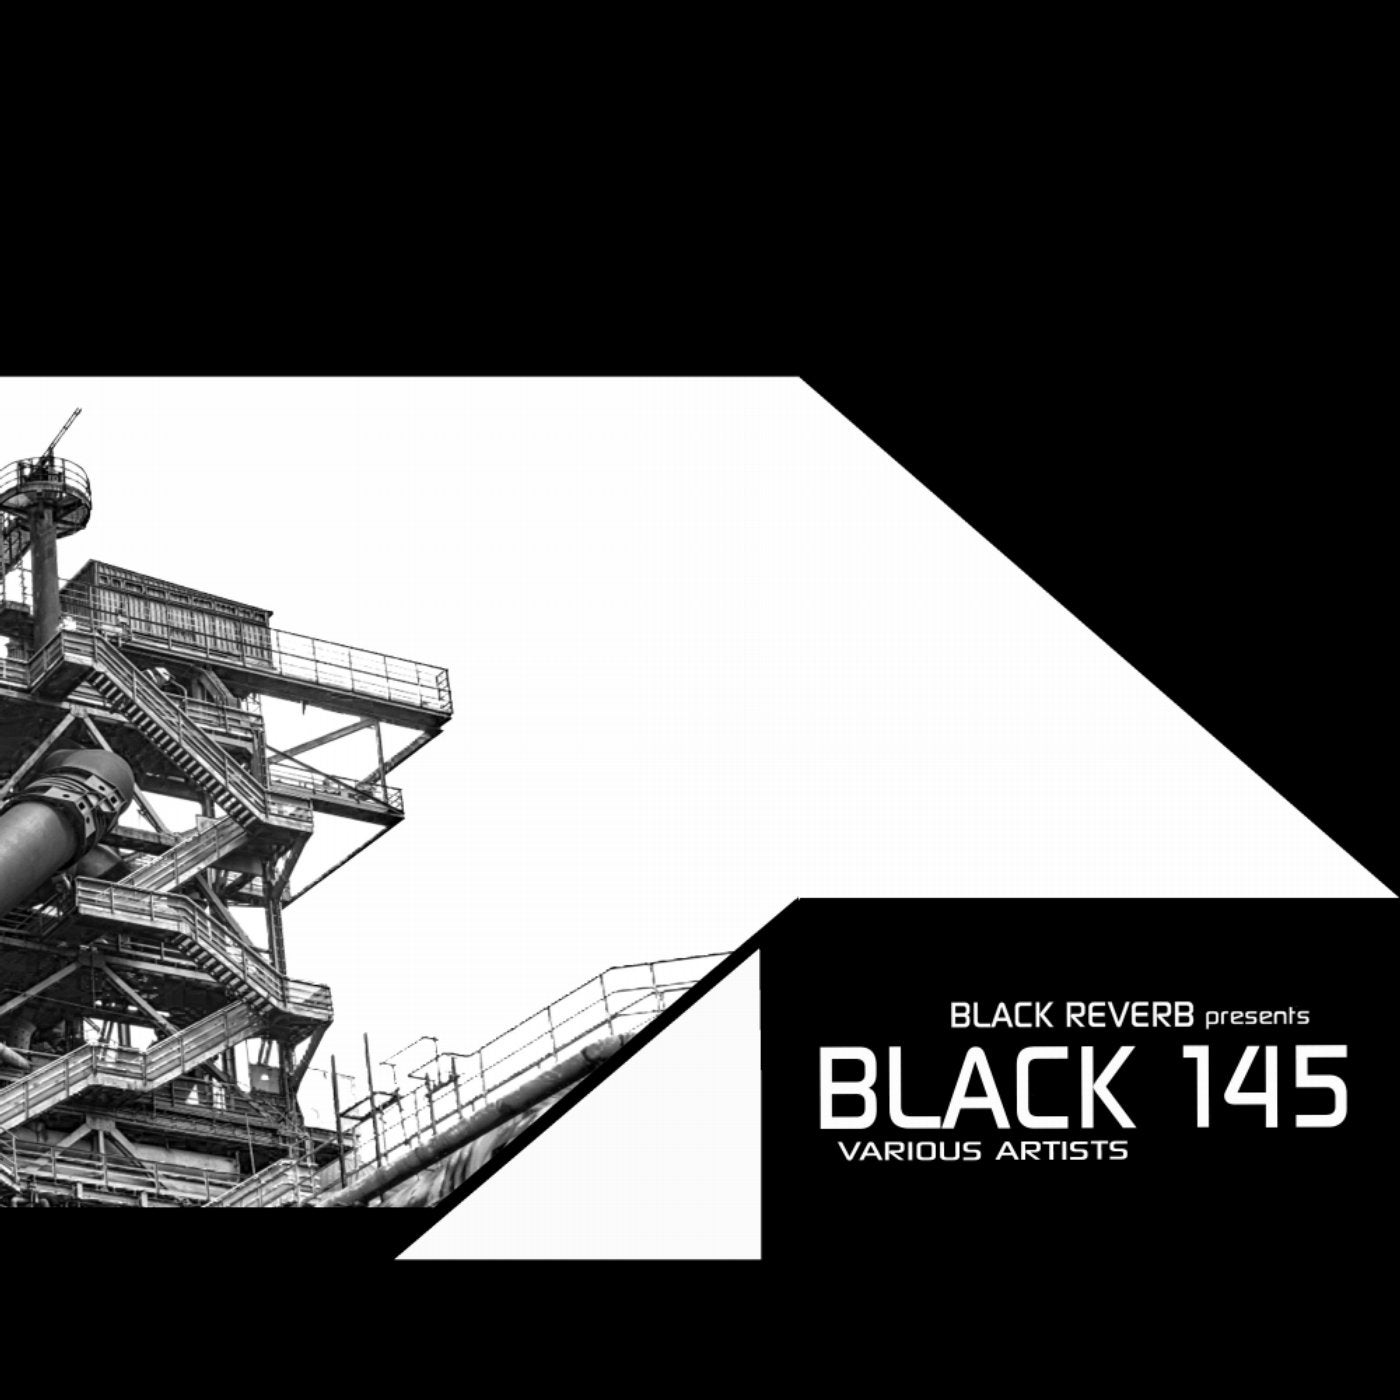 Black 145